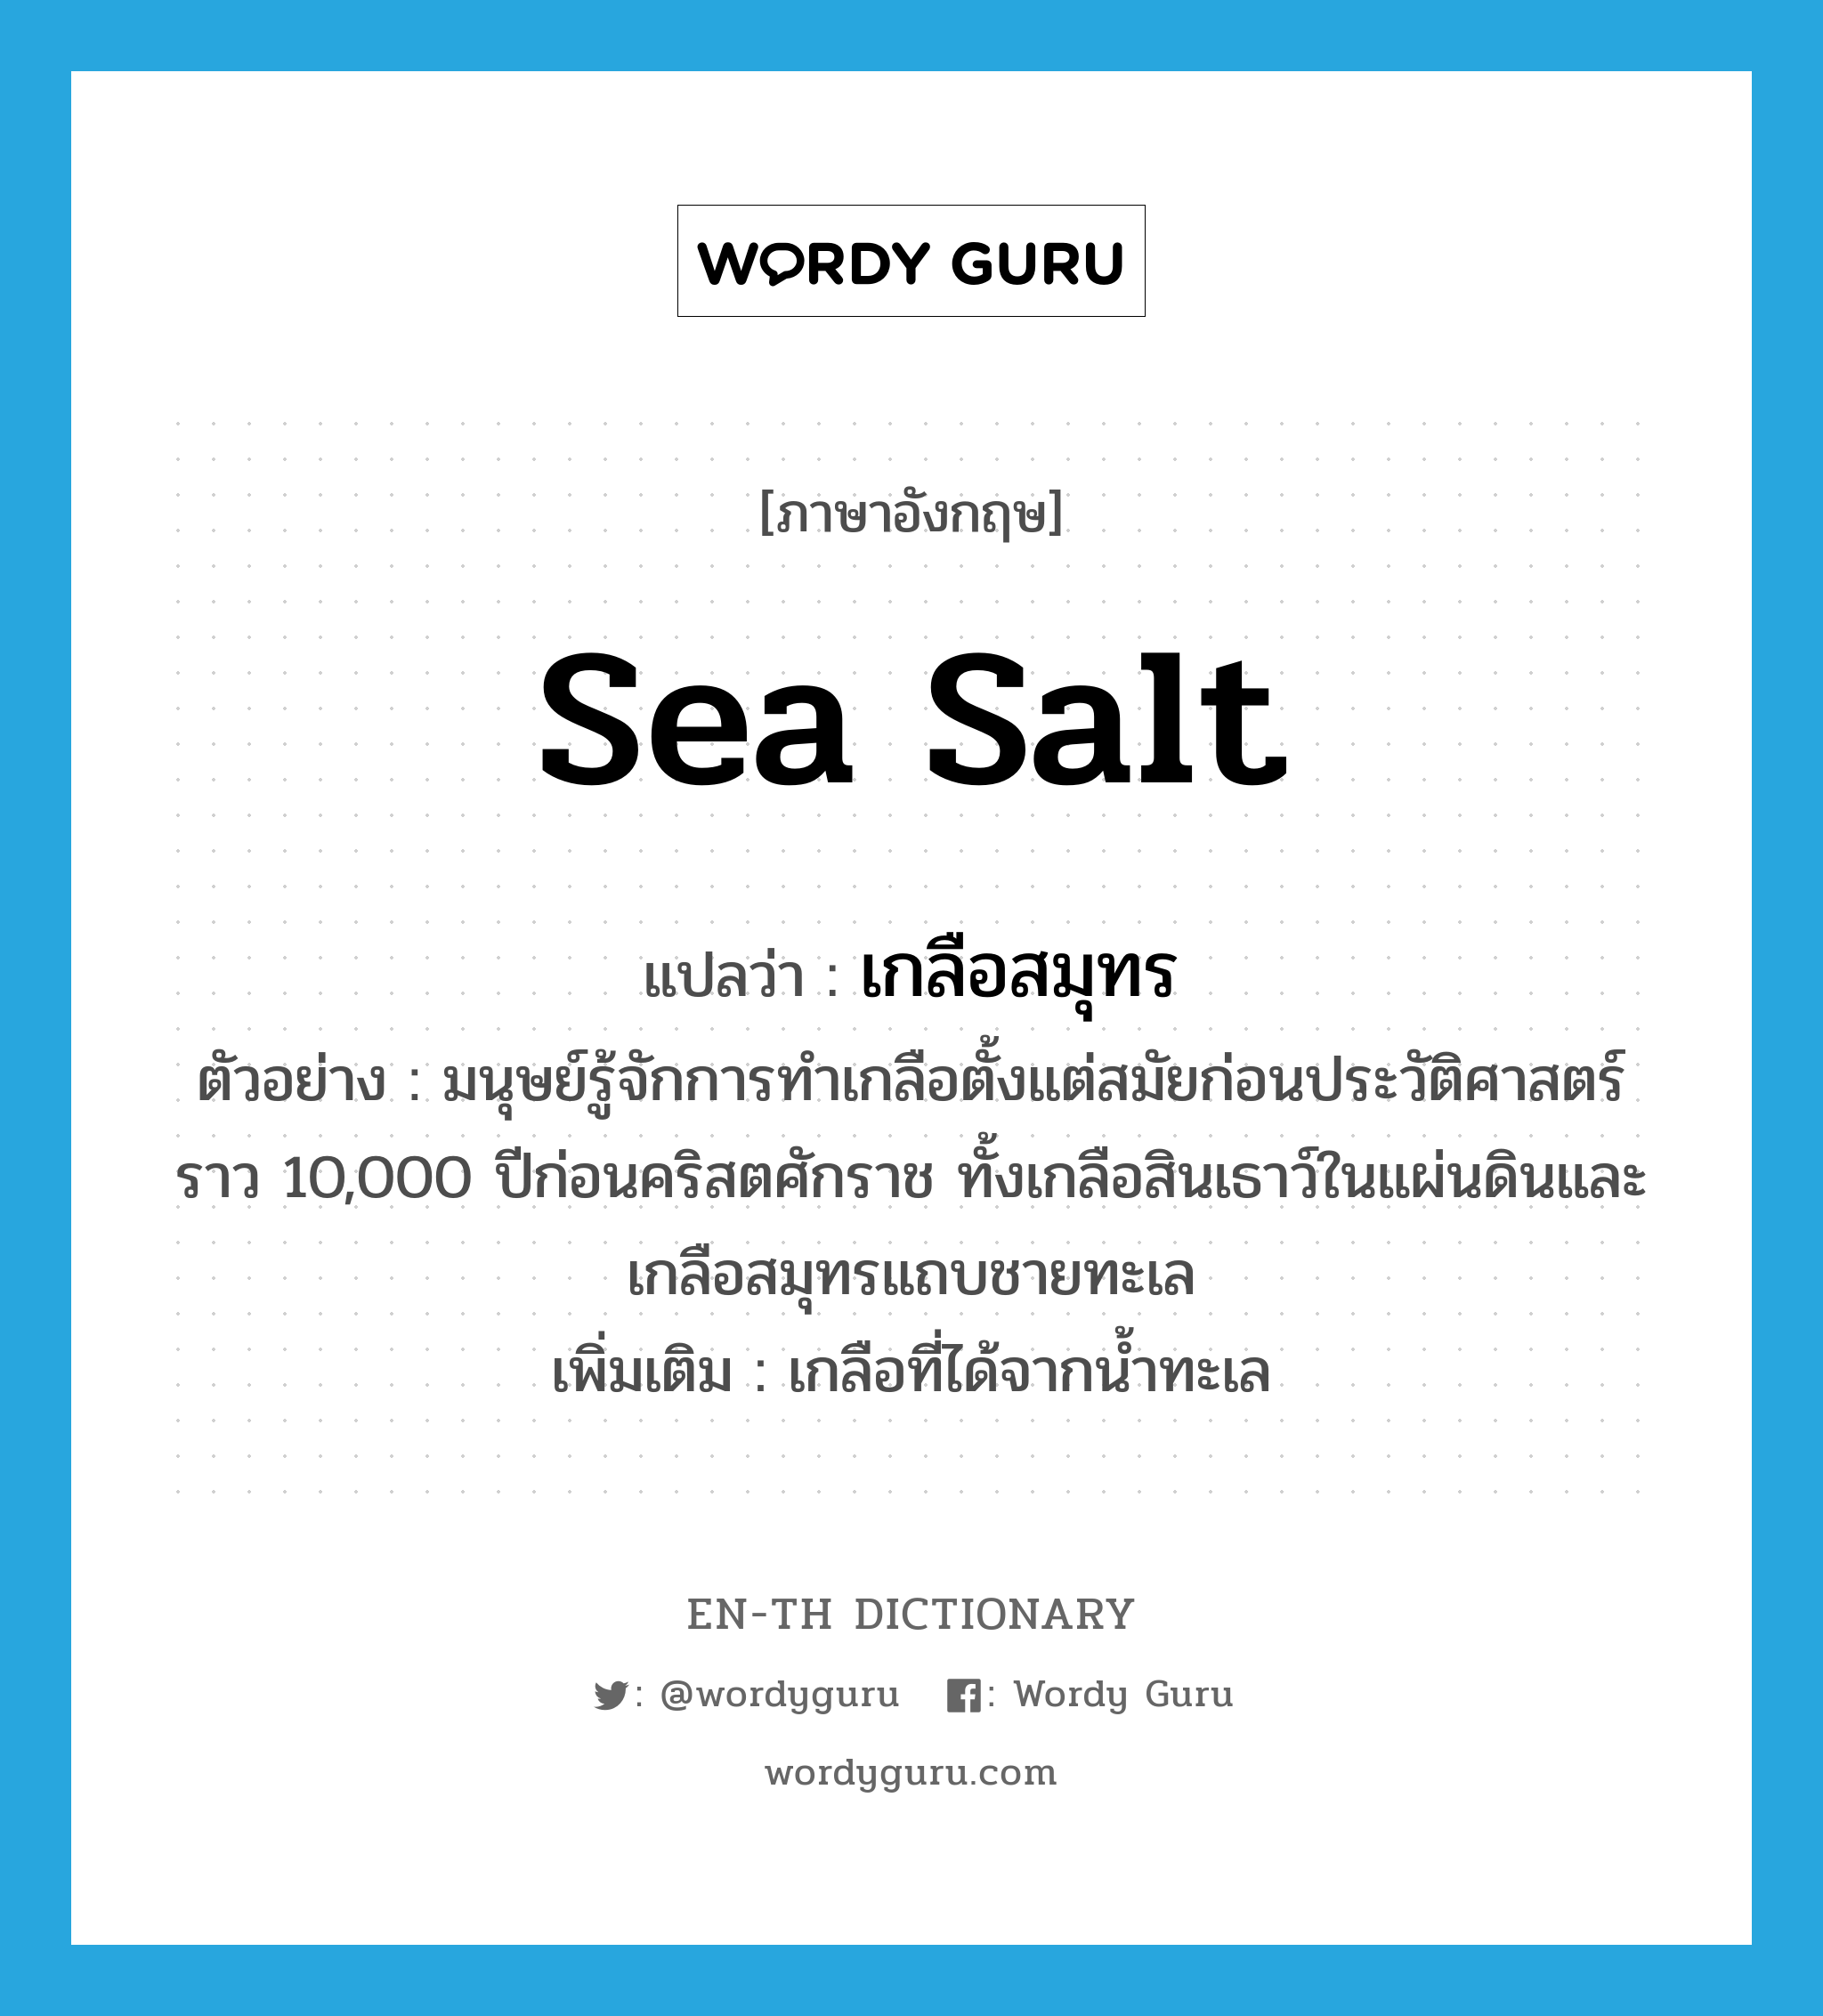 เกลือสมุทร ภาษาอังกฤษ?, คำศัพท์ภาษาอังกฤษ เกลือสมุทร แปลว่า sea salt ประเภท N ตัวอย่าง มนุษย์รู้จักการทำเกลือตั้งแต่สมัยก่อนประวัติศาสตร์ราว 10,000 ปีก่อนคริสตศักราช ทั้งเกลือสินเธาว์ในแผ่นดินและเกลือสมุทรแถบชายทะเล เพิ่มเติม เกลือที่ได้จากน้ำทะเล หมวด N